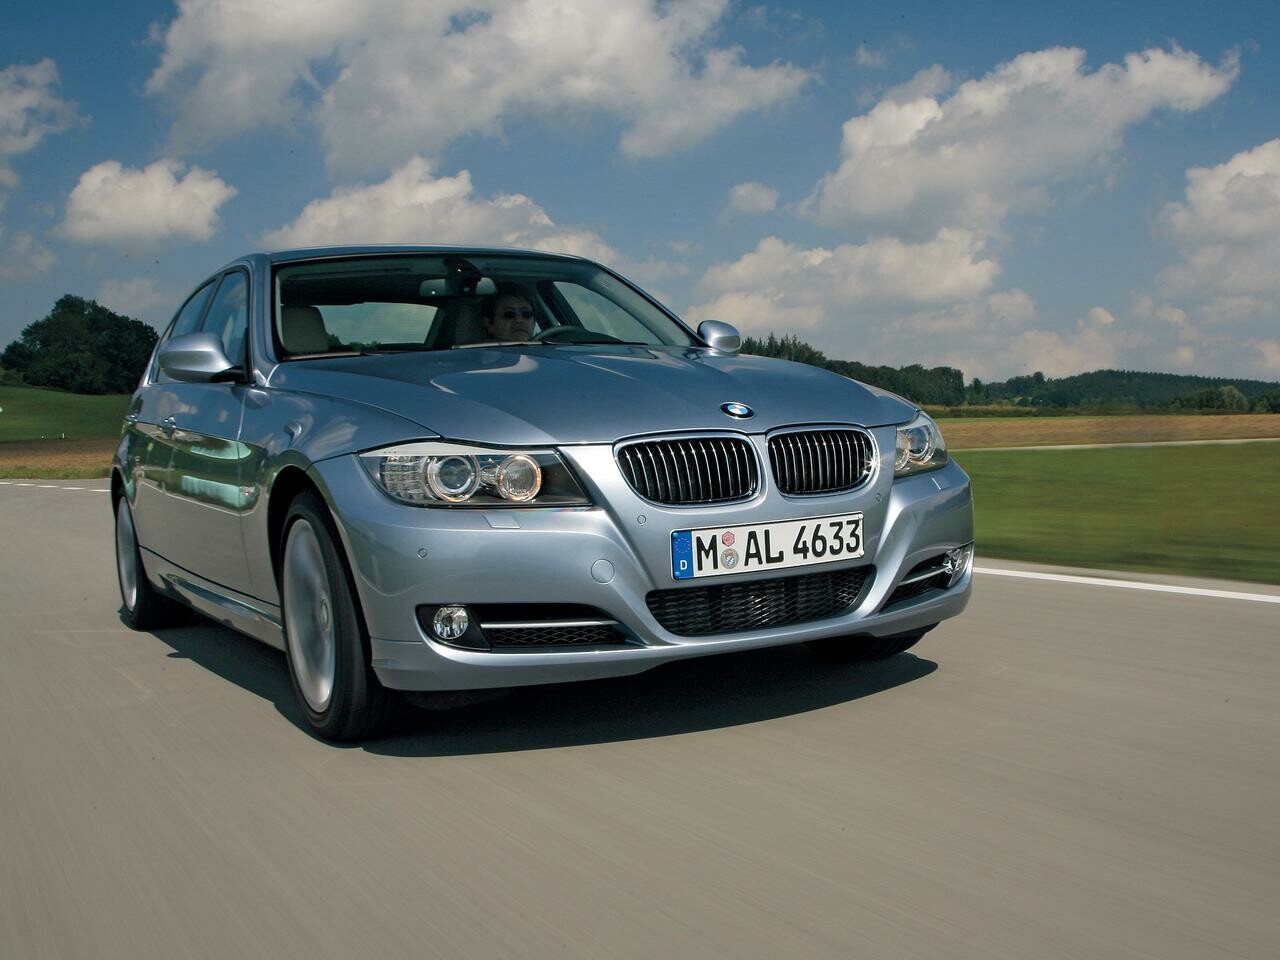 【試乗】E90型BMW3シリーズは外観を新たに、再び魅力をアップしていた【10年ひと昔の新車】